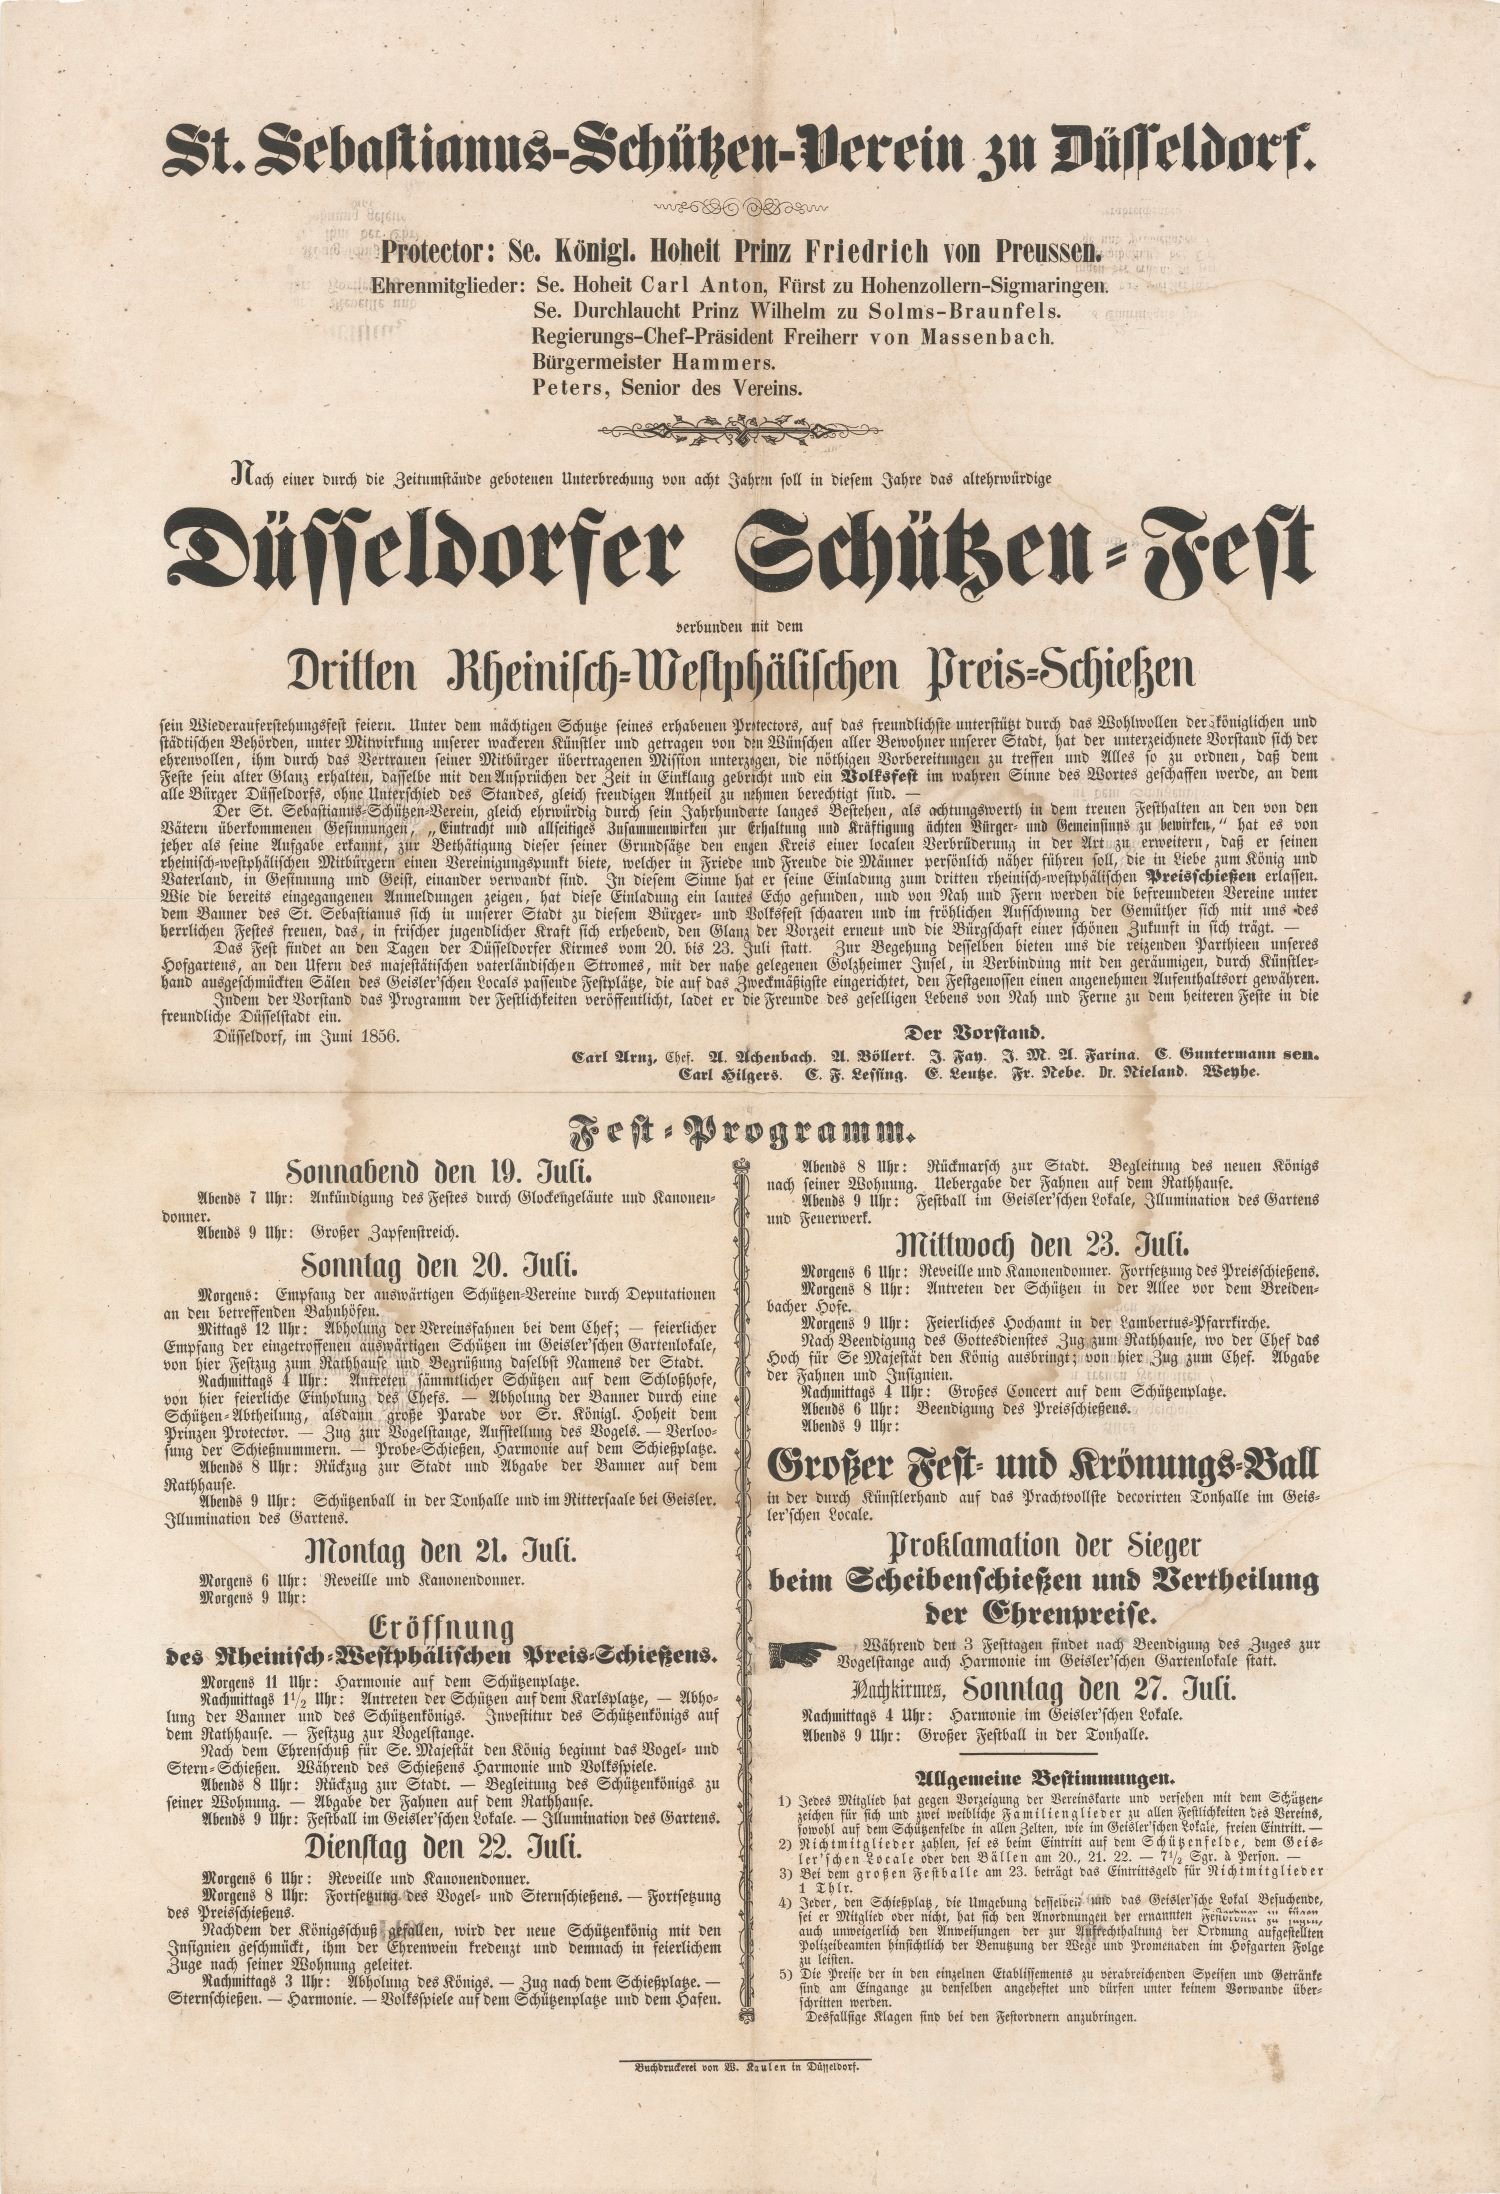 Festplakat Düsseldorfer Schützenfest 1856 (Rheinisches Schützenmuseum Neuss CC BY-NC-SA)